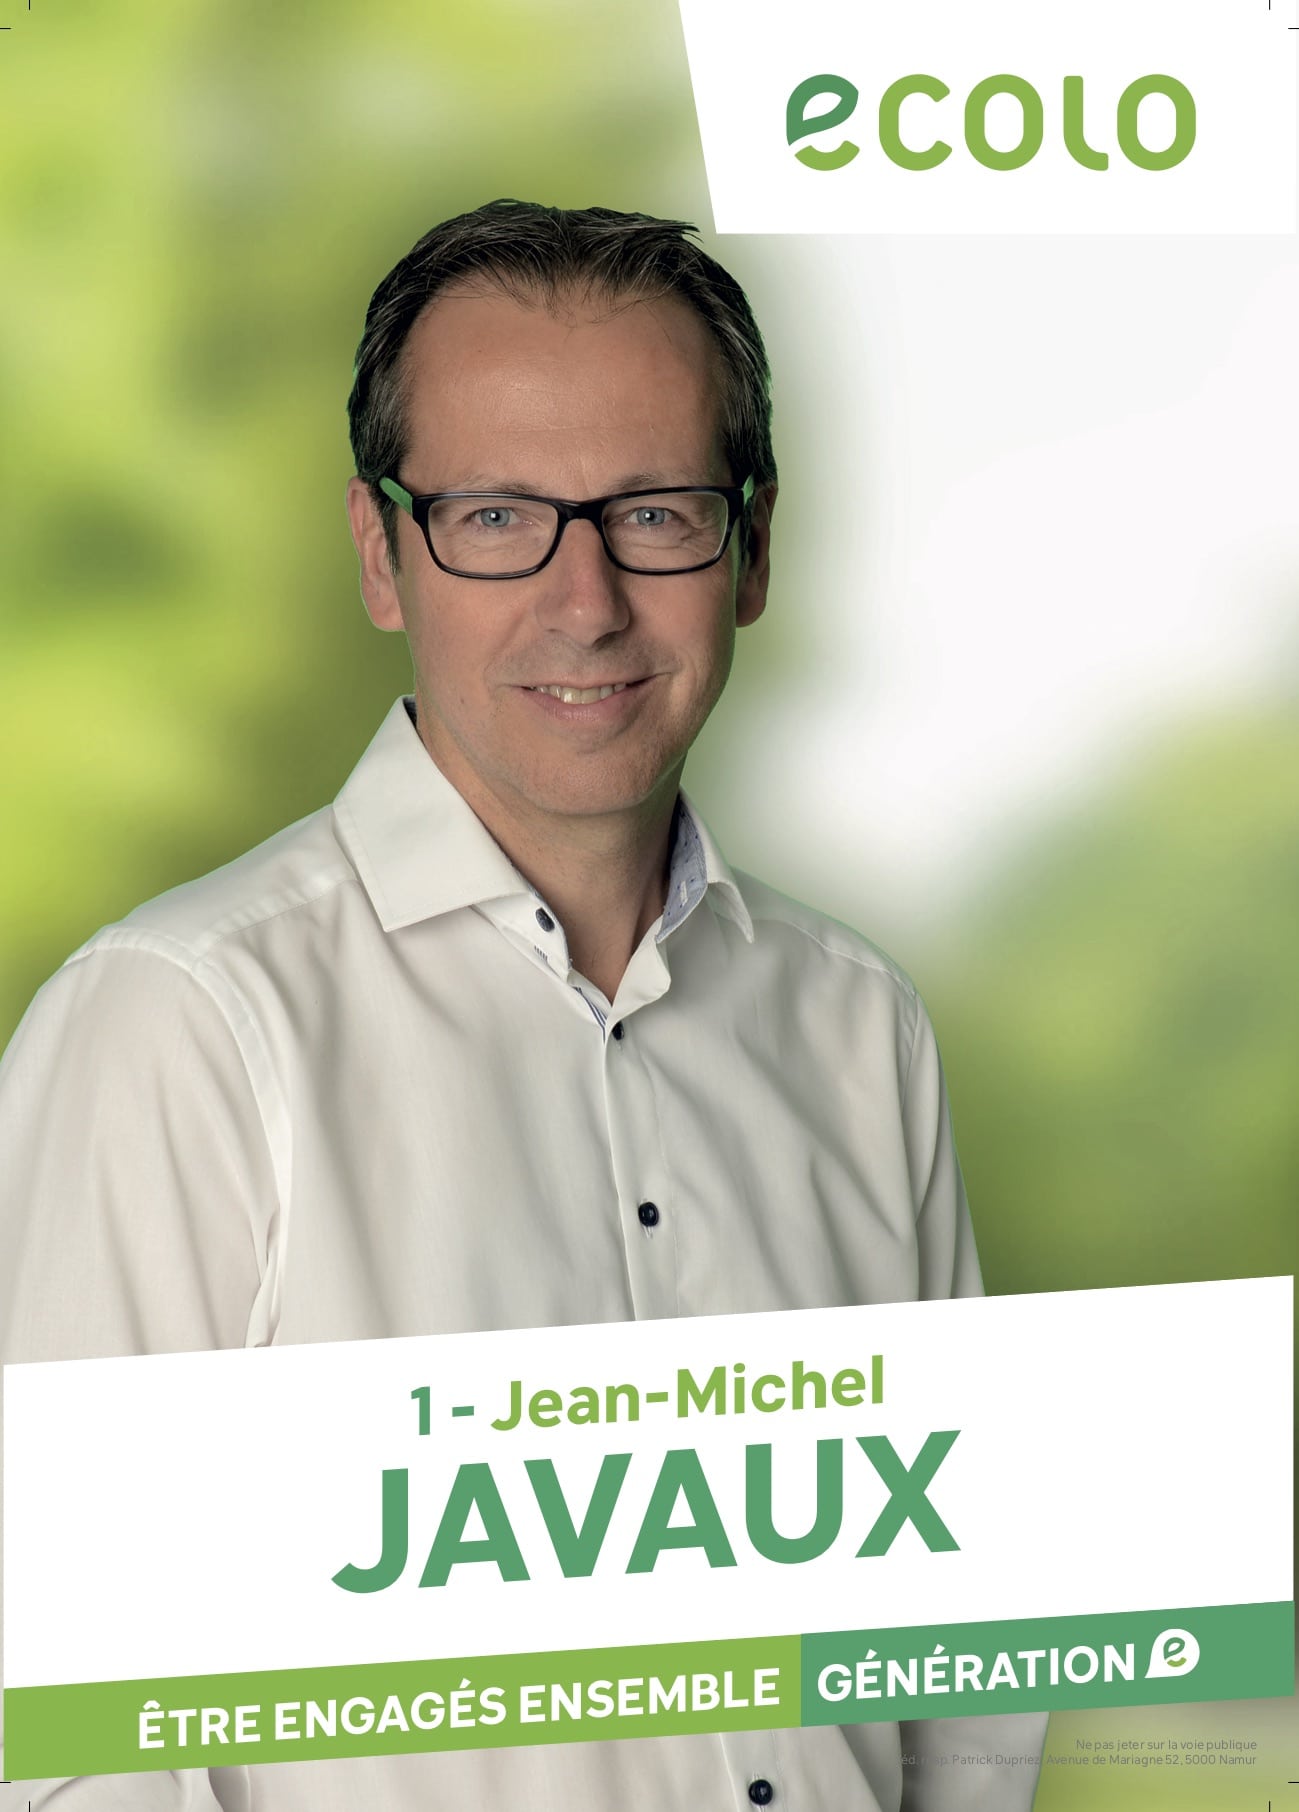 Jean-Michel Javaux